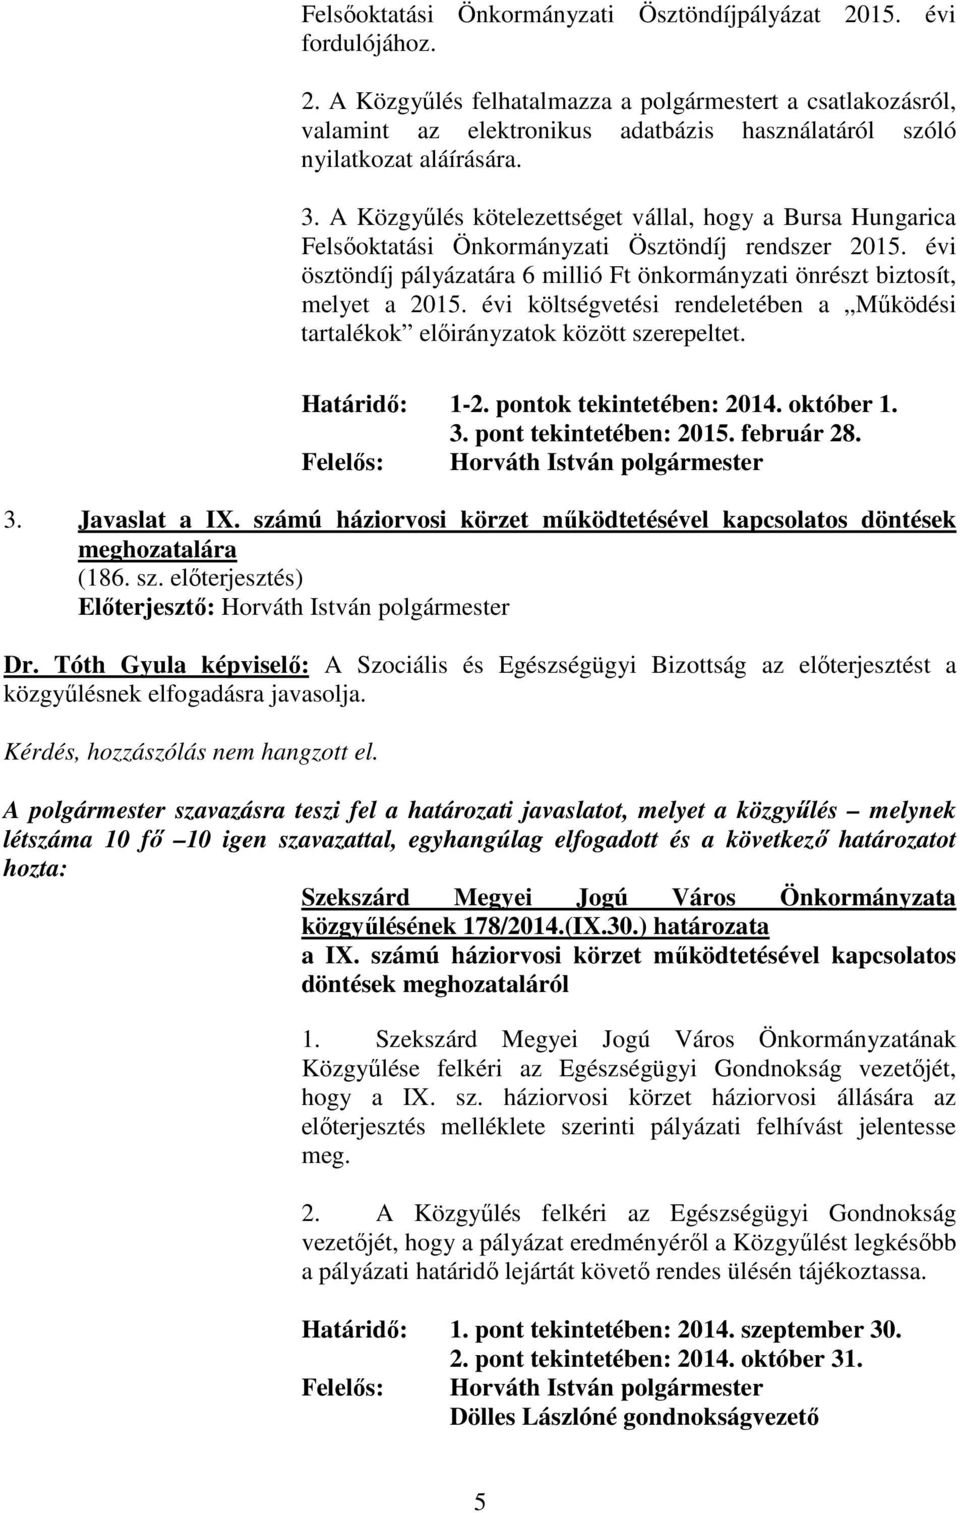 évi költségvetési rendeletében a Mőködési tartalékok elıirányzatok között szerepeltet. Határidı: 1-2. pontok tekintetében: 2014. október 1. 3. pont tekintetében: 2015. február 28.